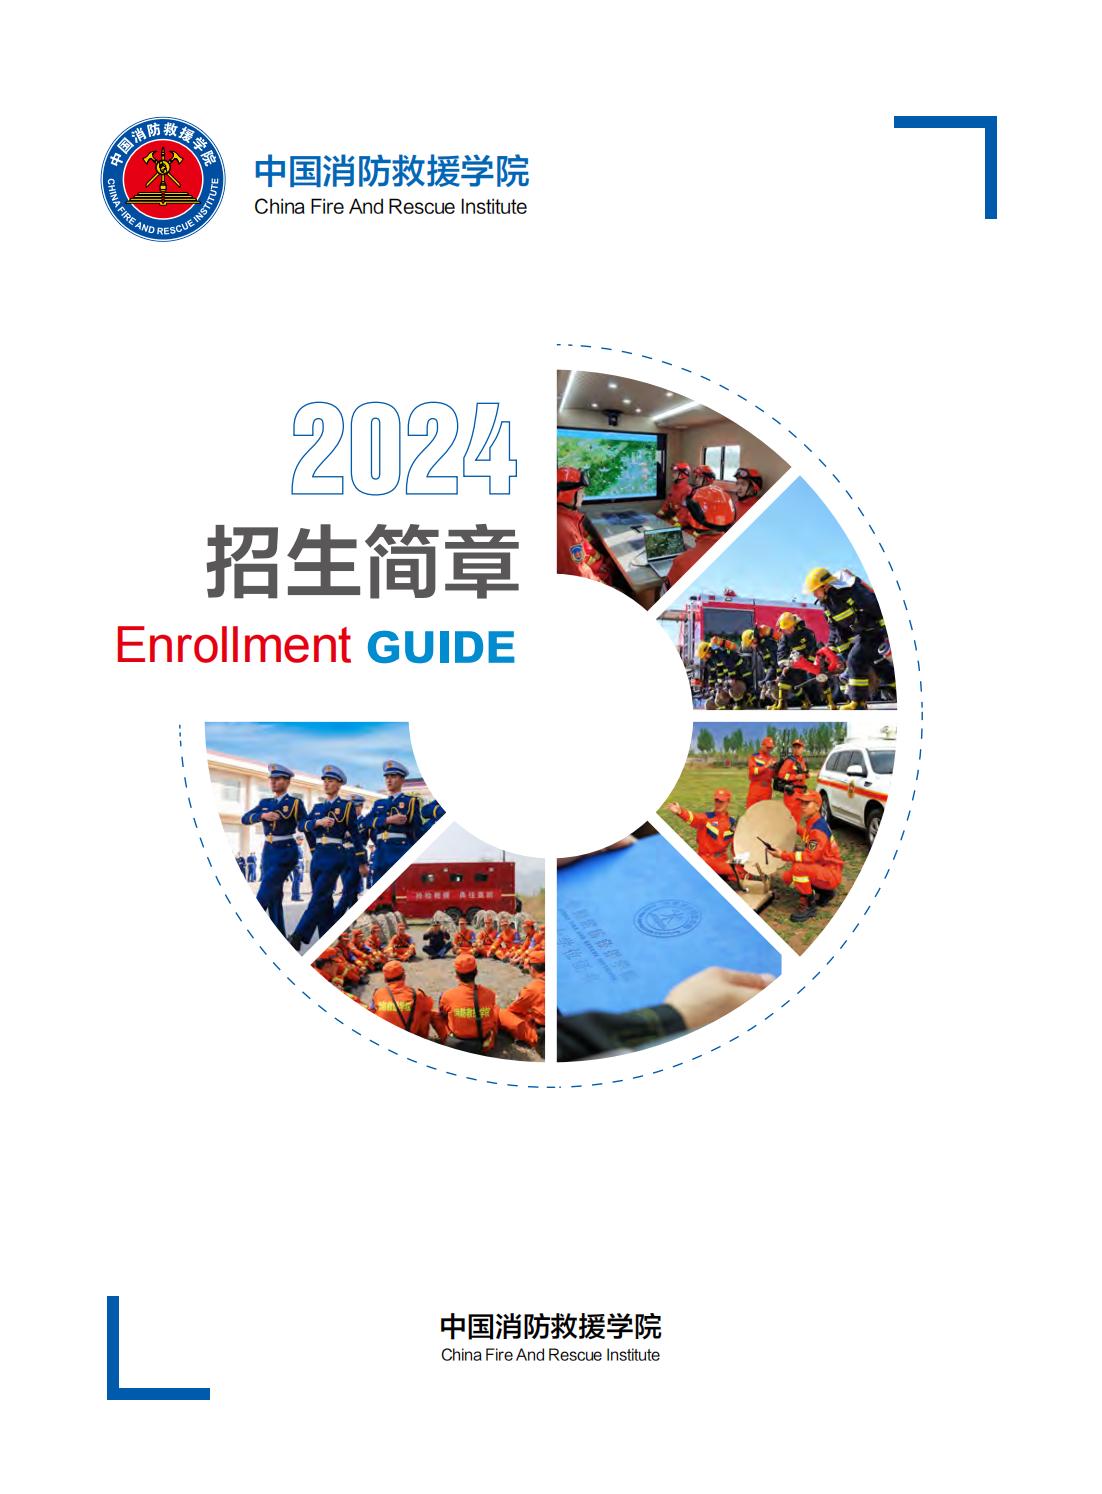 中国消防救援学院招生简章-2024年-终版_01.jpg